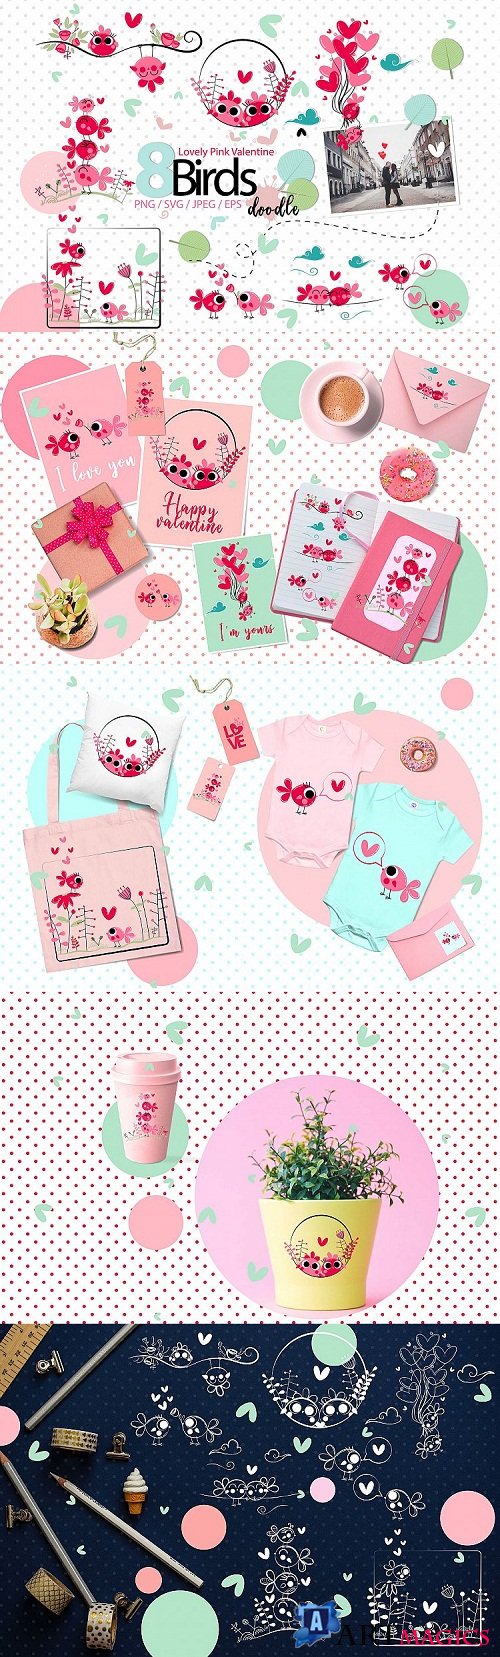 designbundles - Lovely Pink Valentine Doodle birds -199330